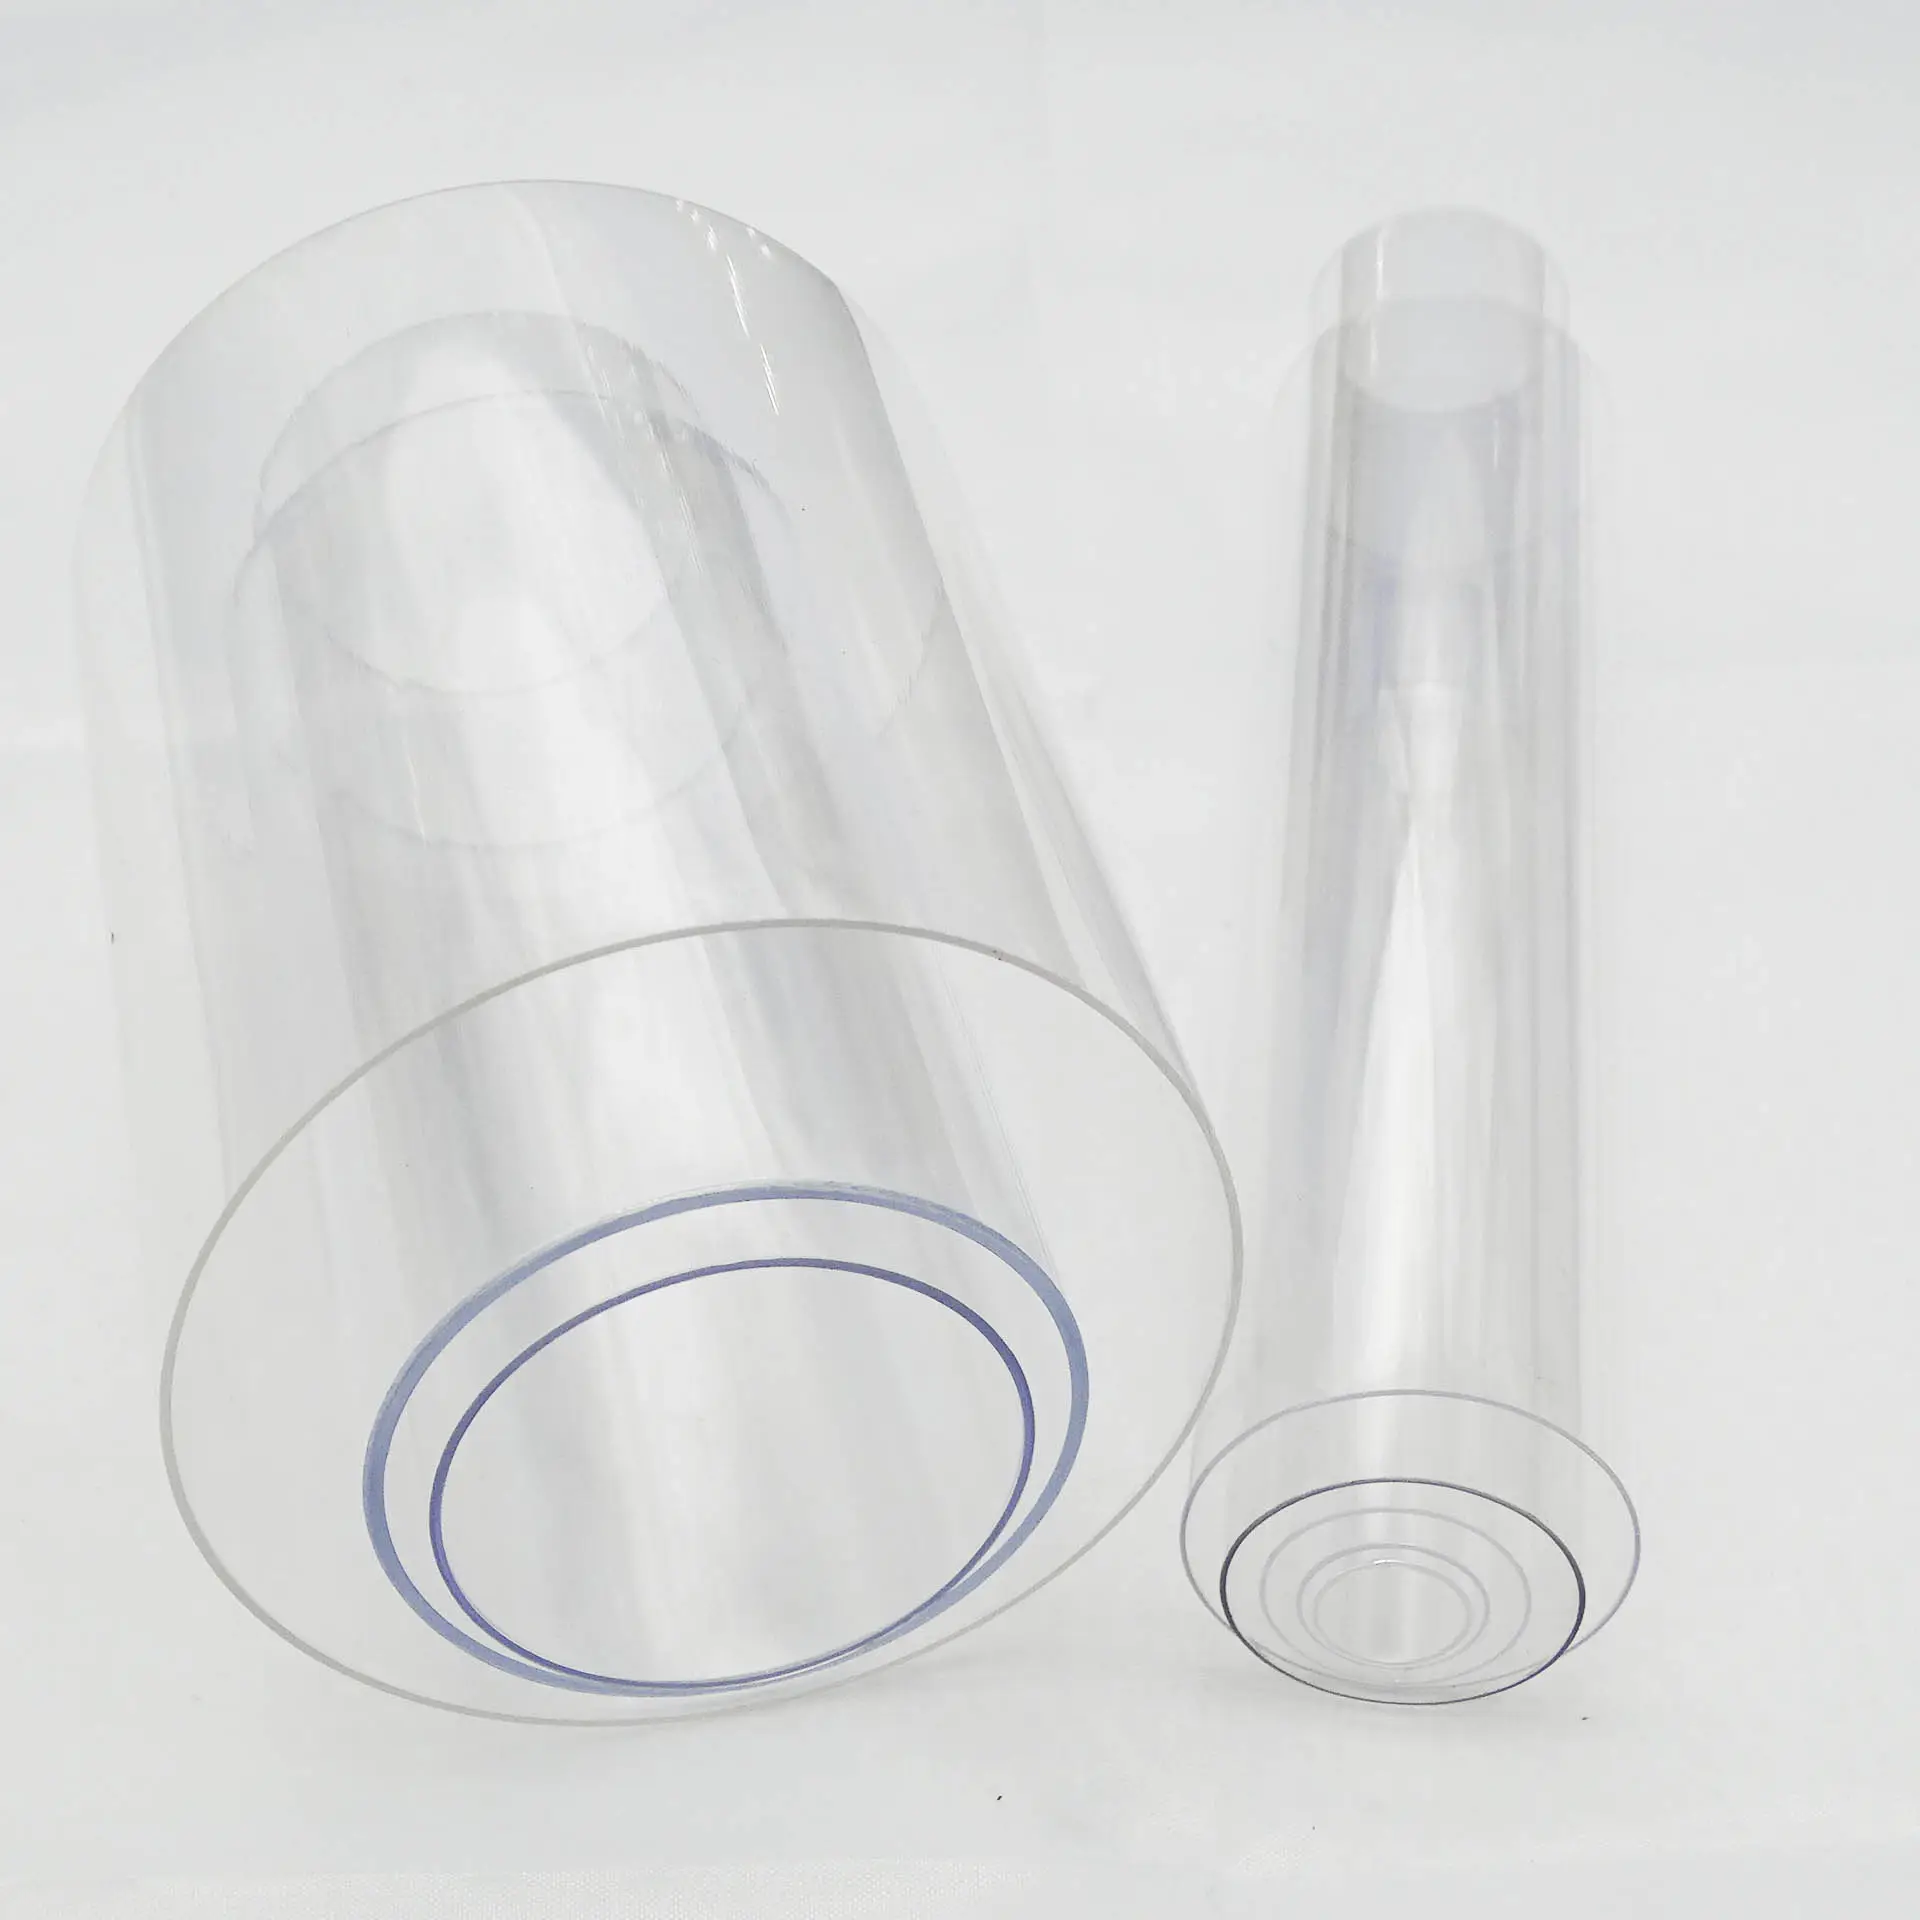 Pieza de plástico para PC, tubo para PC, policarbonato transparente, plástico, PC puro, serigrafía aceptada, cilindro transparente personalizado